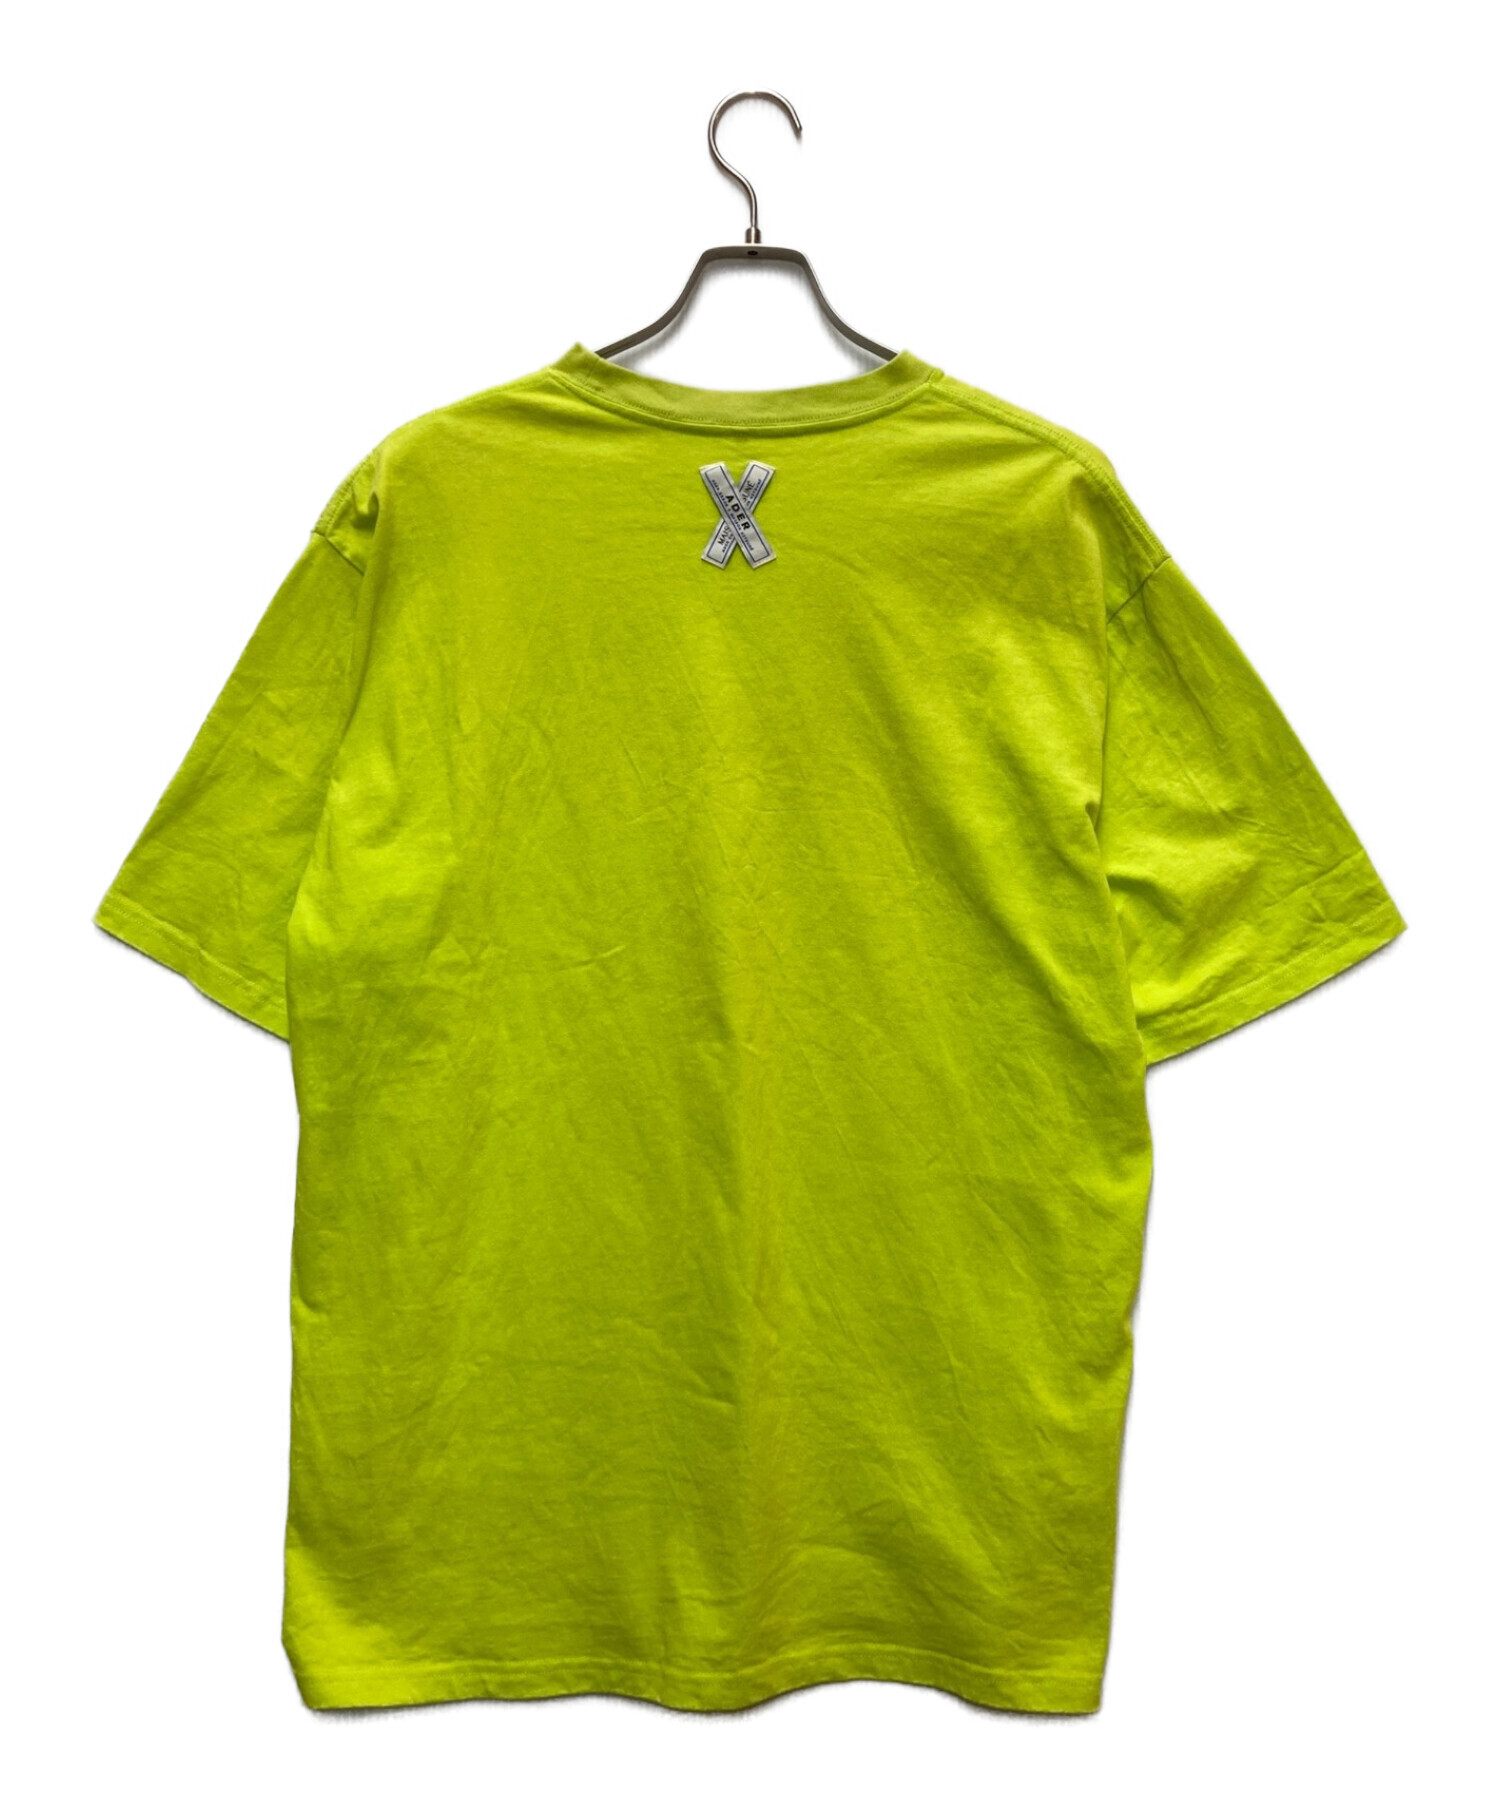 MAISON KITSUNE (メゾンキツネ) ADER error (アーダーエラー) プリント刺繍Tシャツ 黄緑 サイズ:A2